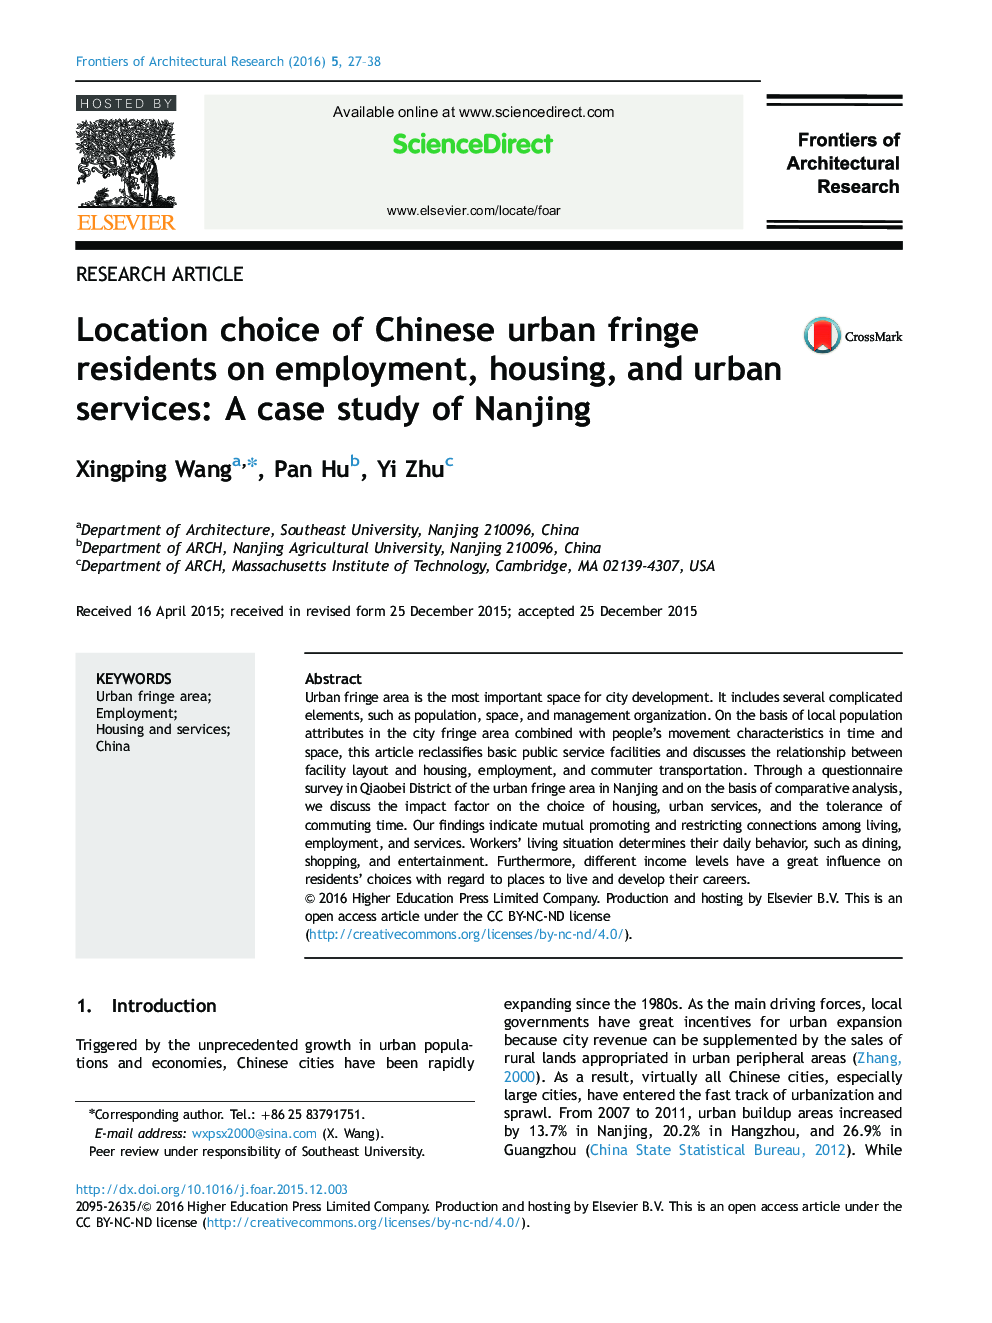 انتخاب محل ساکنان شهری حاشیه ای چین برای اشتغال، مسکن و خدمات شهری: مطالعه موردی از نانجینگ